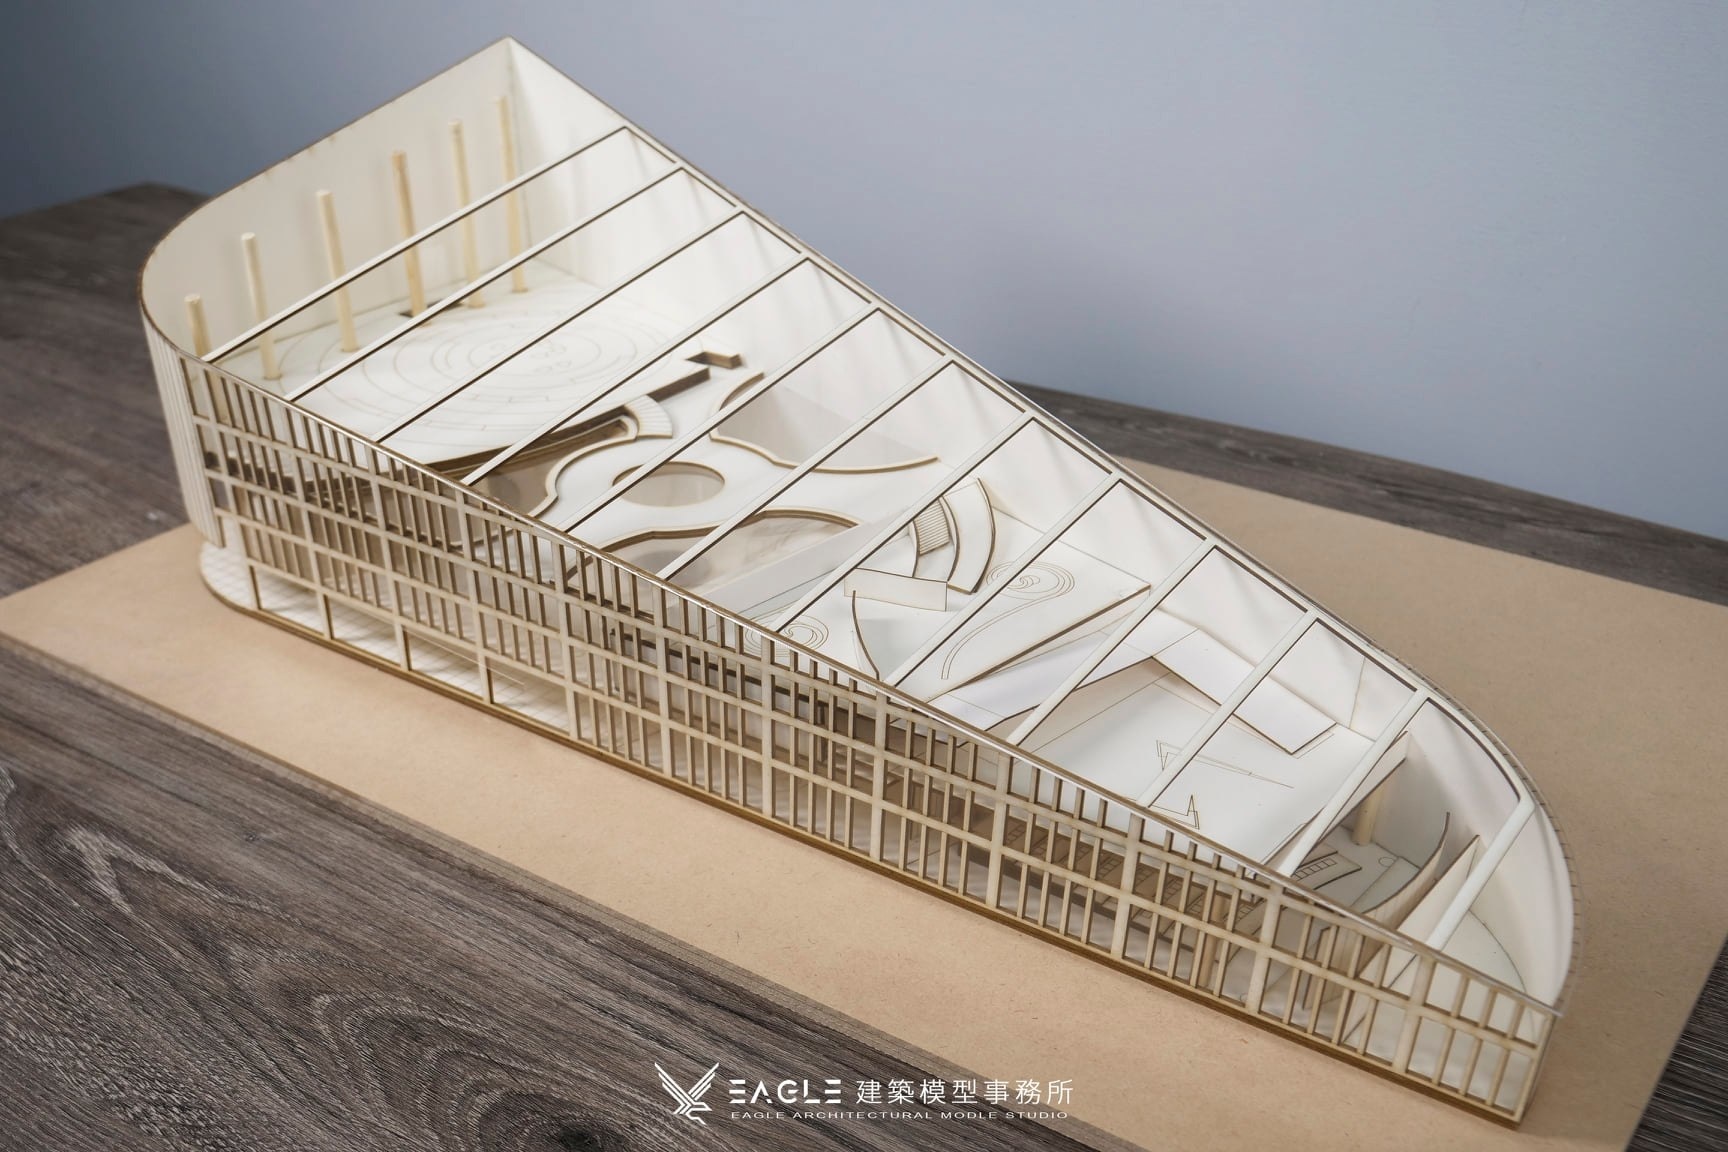 Eagle Model Studio - Miniature Buildings